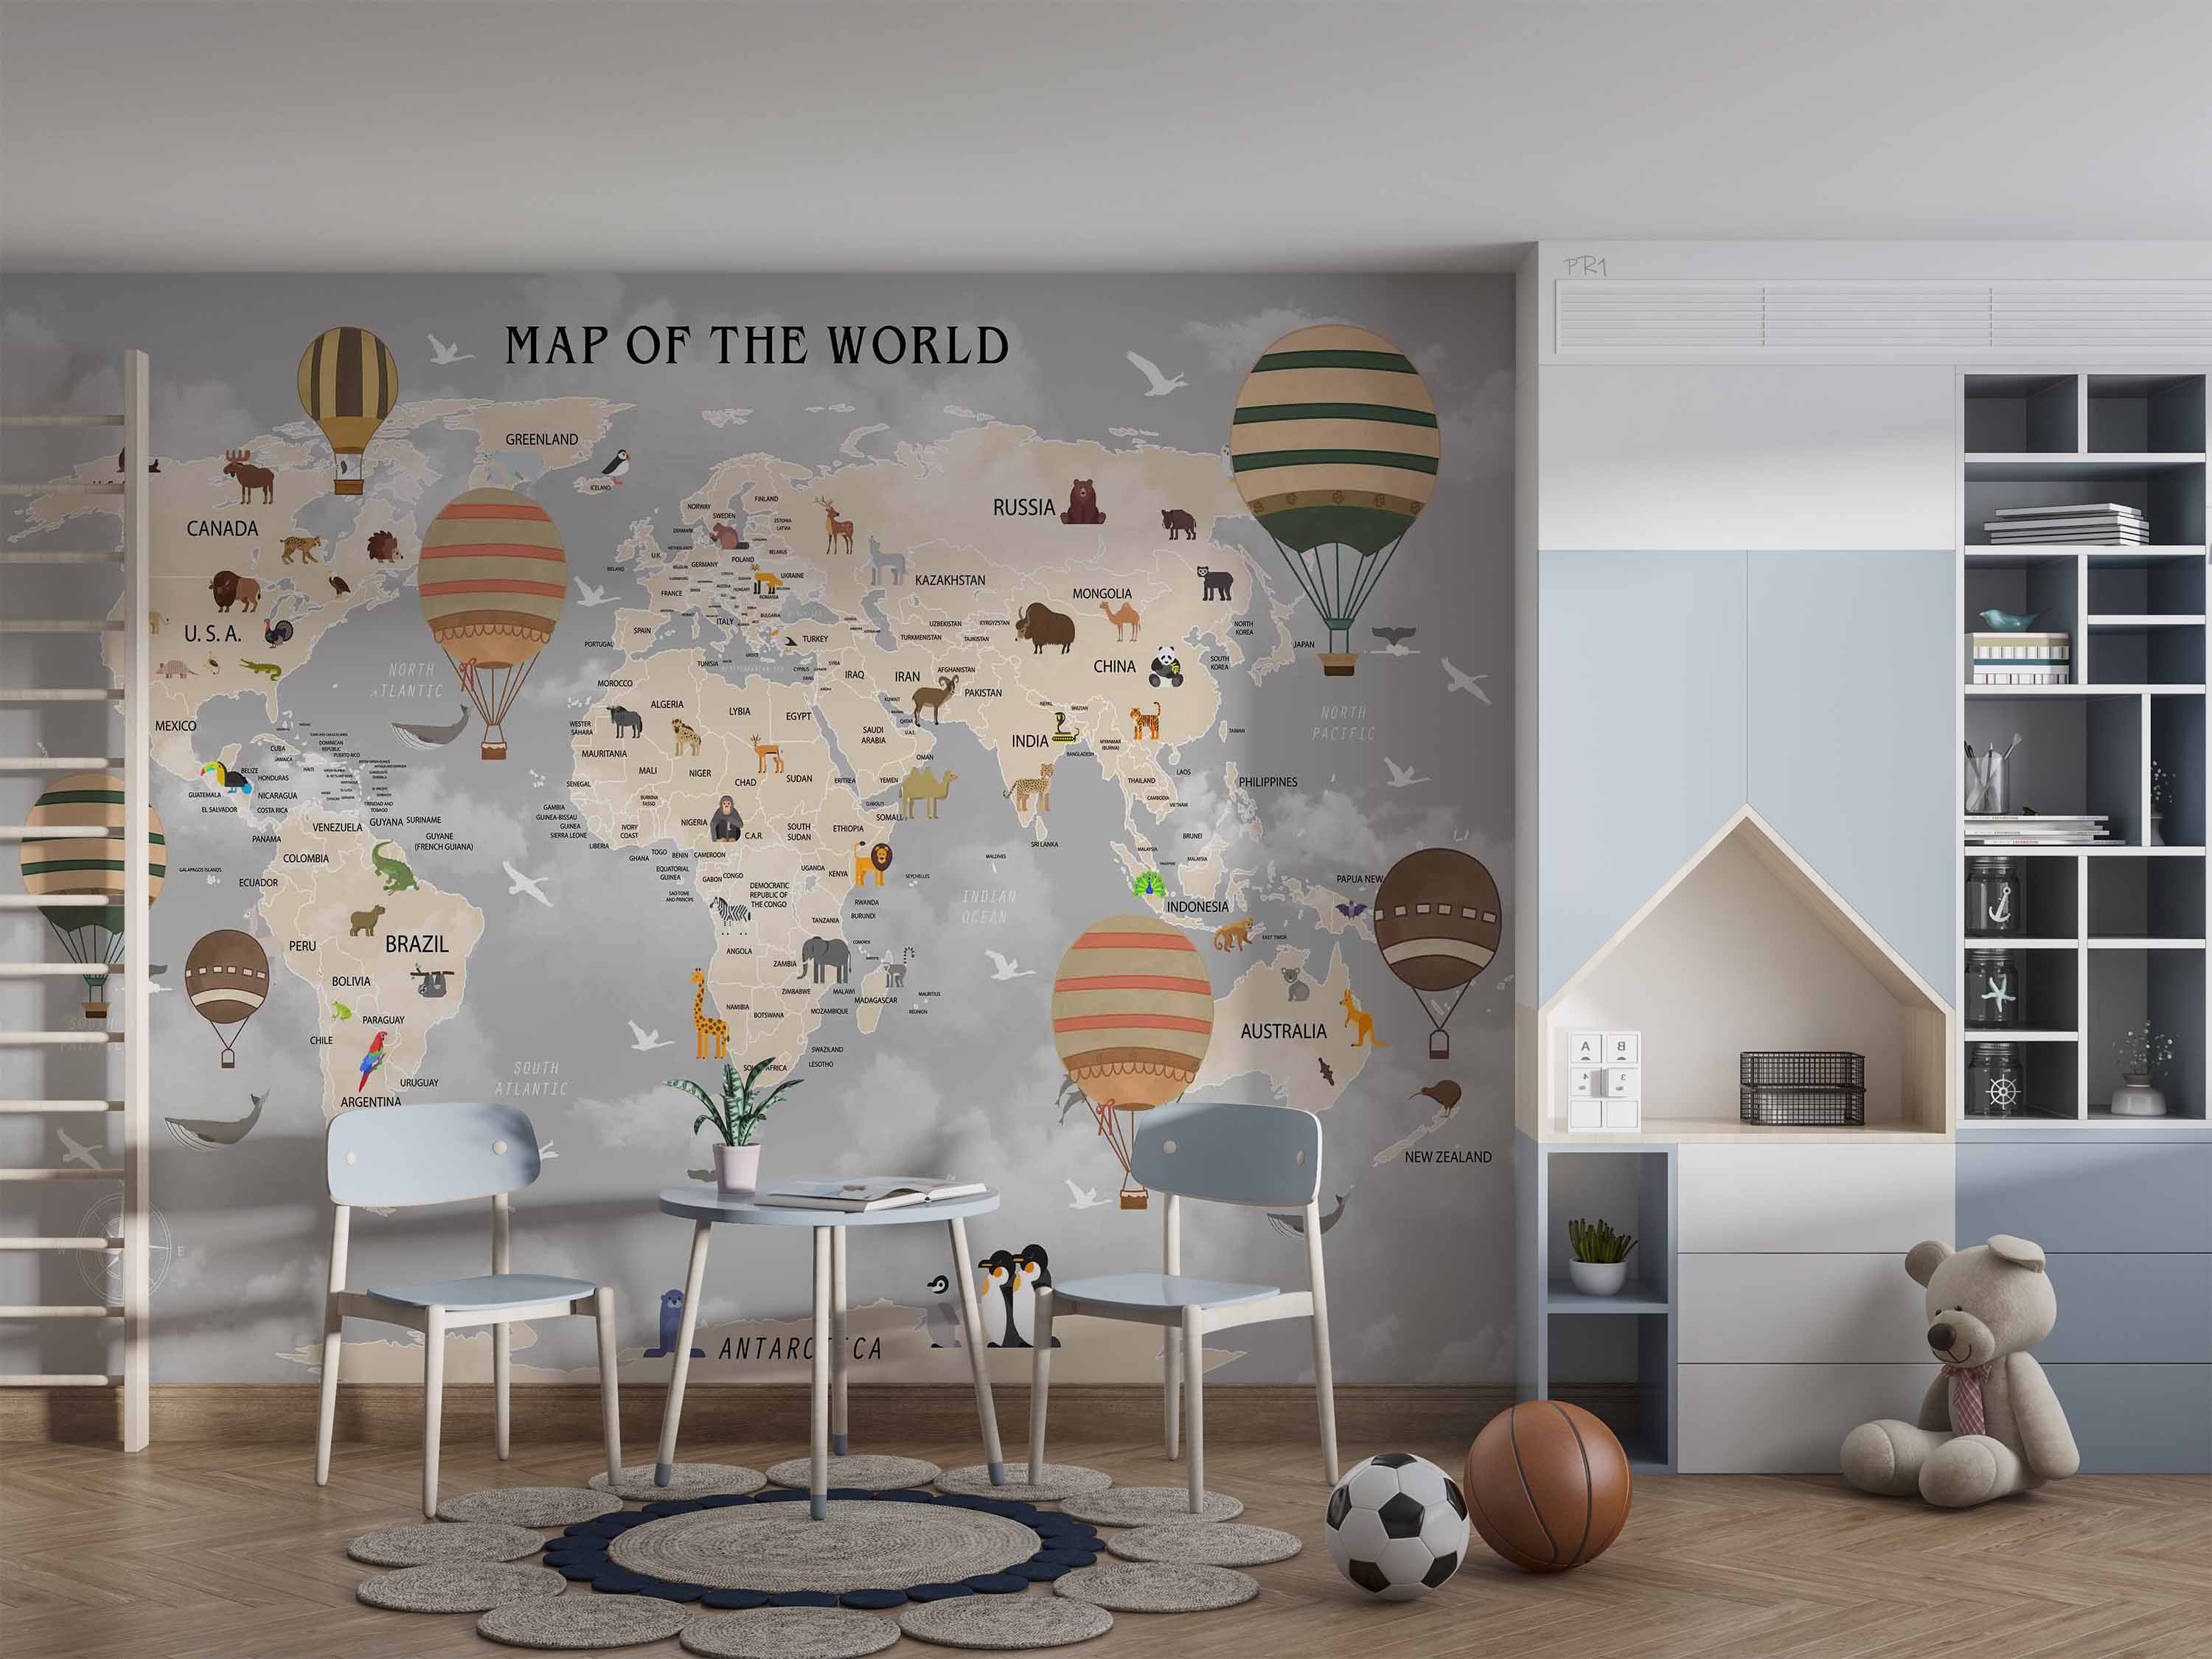 3D Cartoon World Map Hot Air Balloon Wall Mural Wallpaper GD 3610- Jess Art Decoration